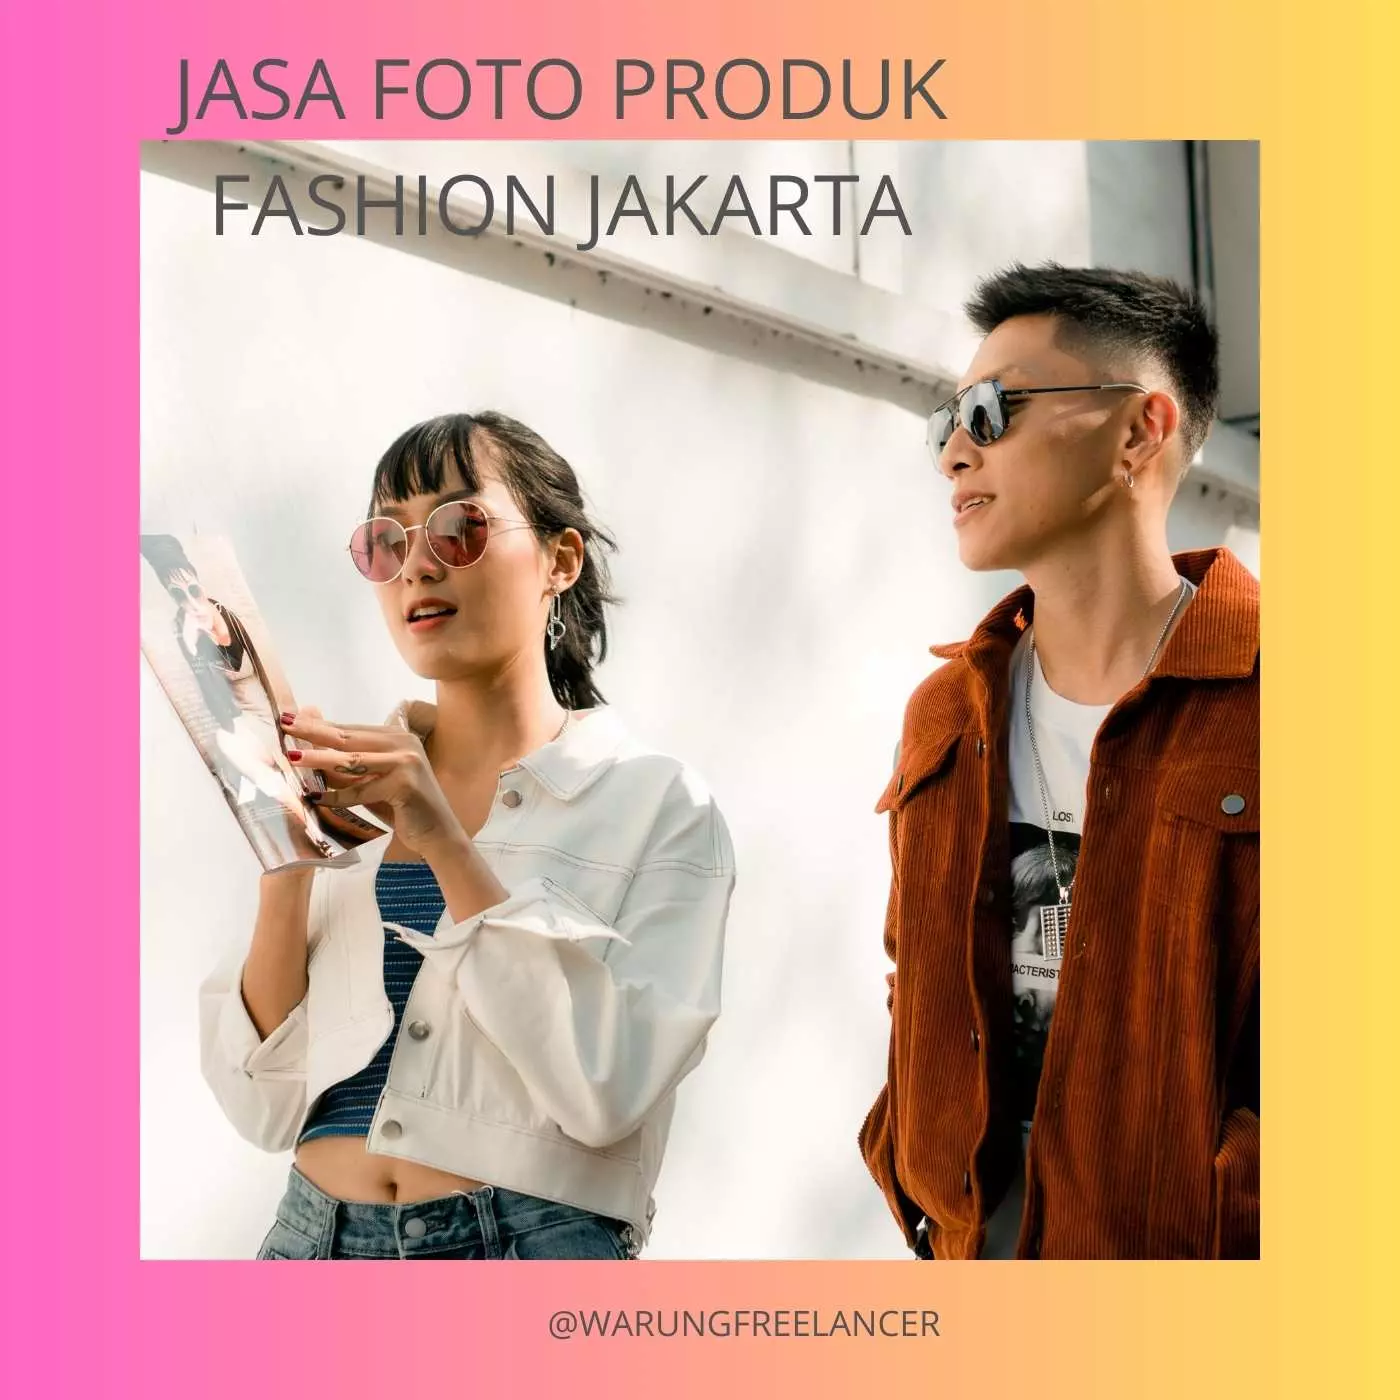 Jasa Foto Produk Fashion Jakarta